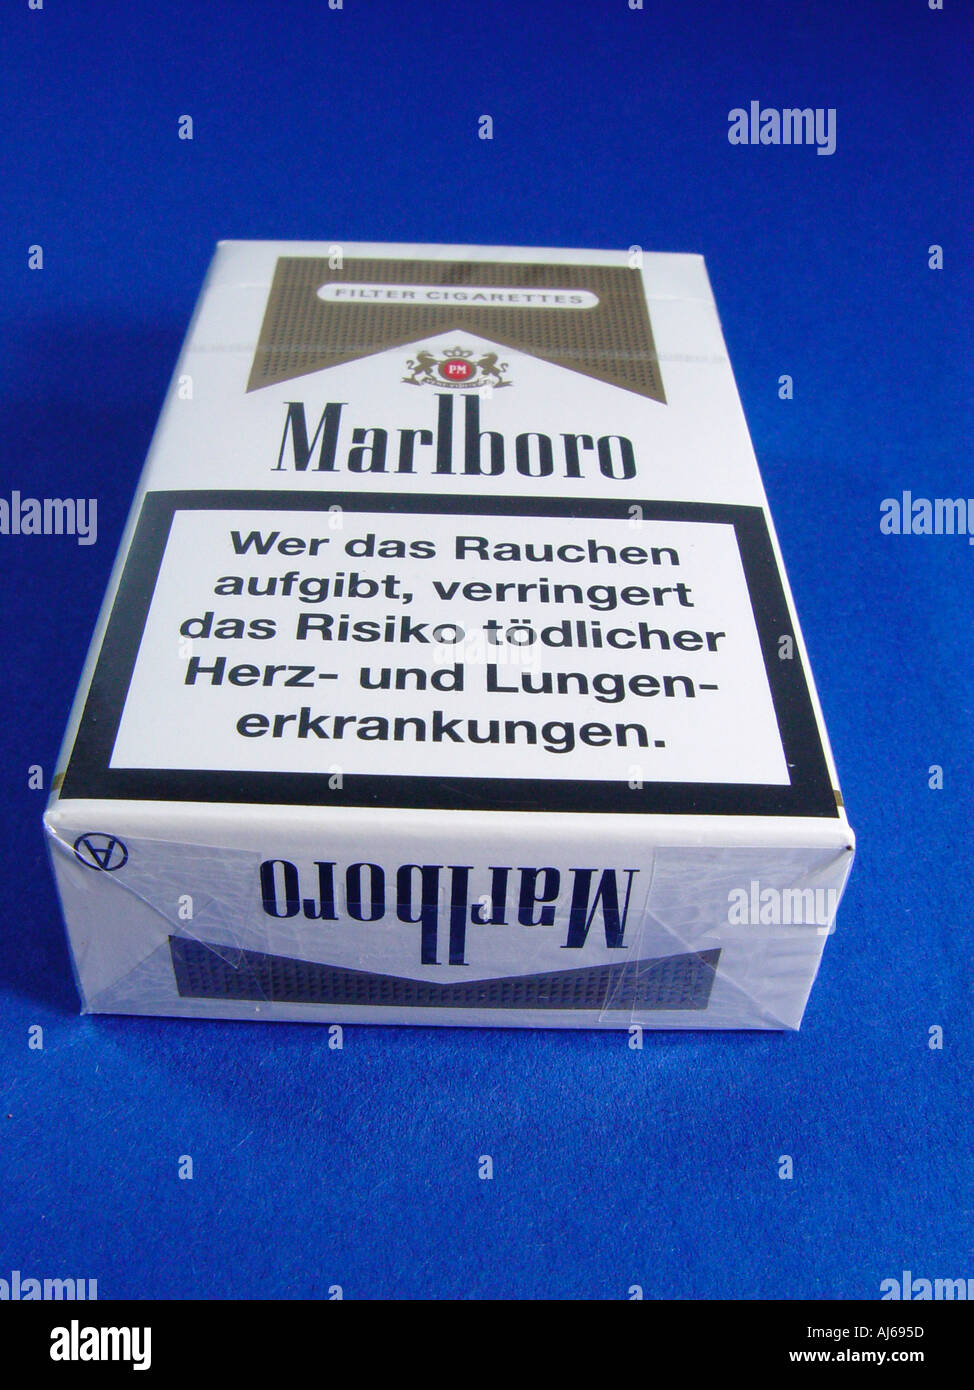 cigarette Stock Photo